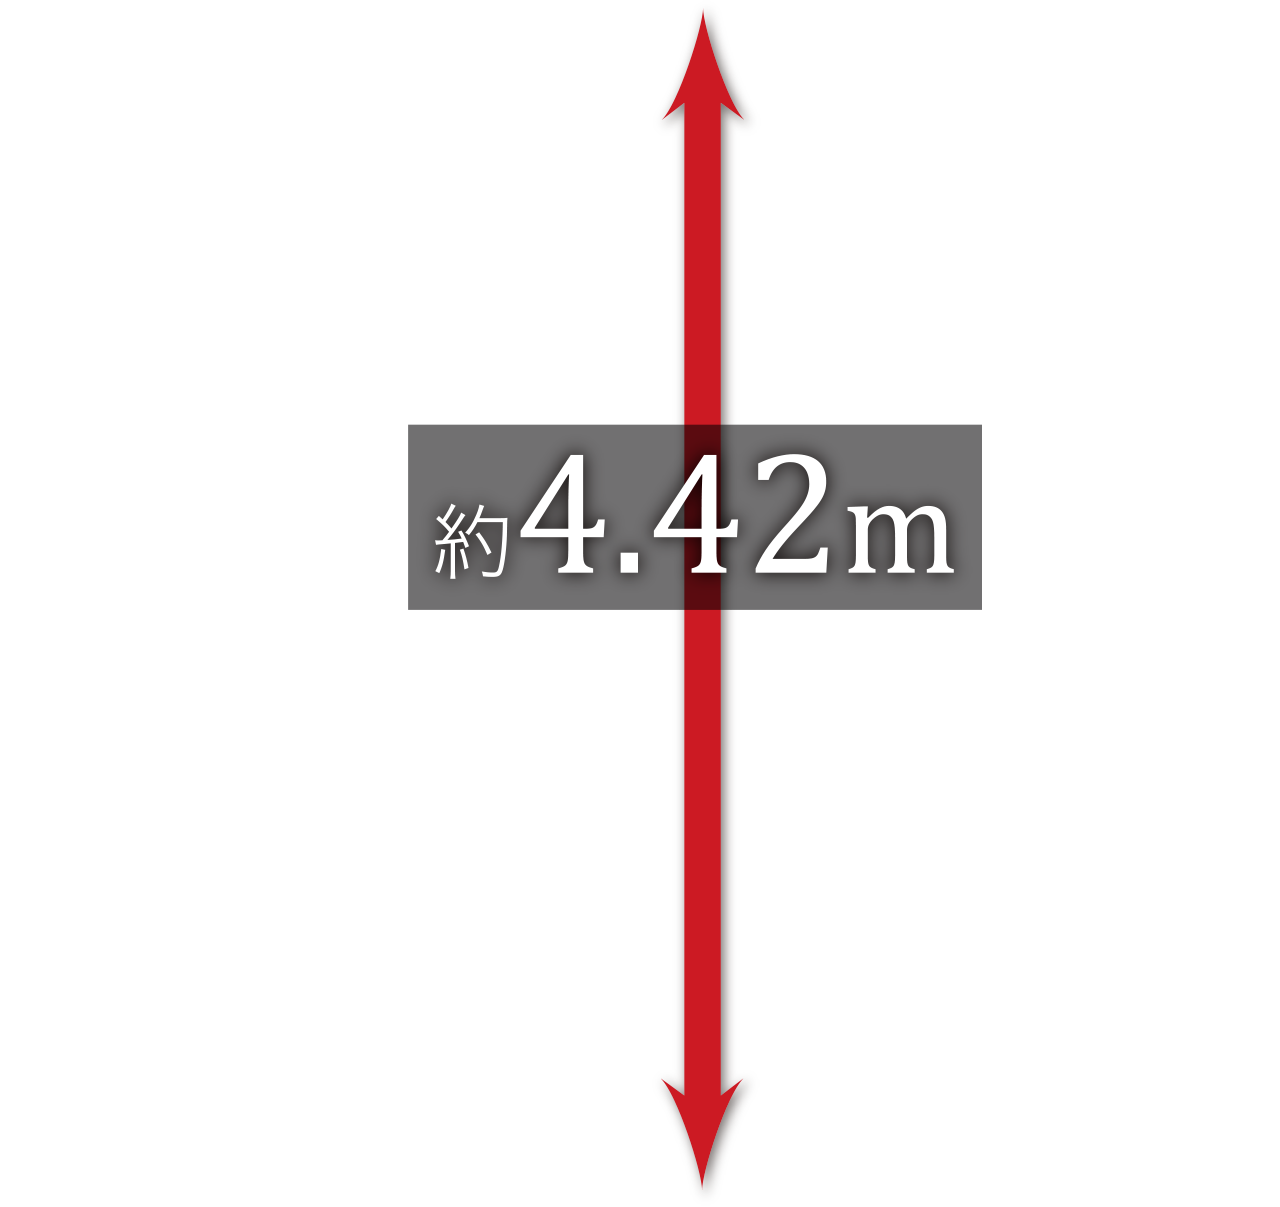 4.42m